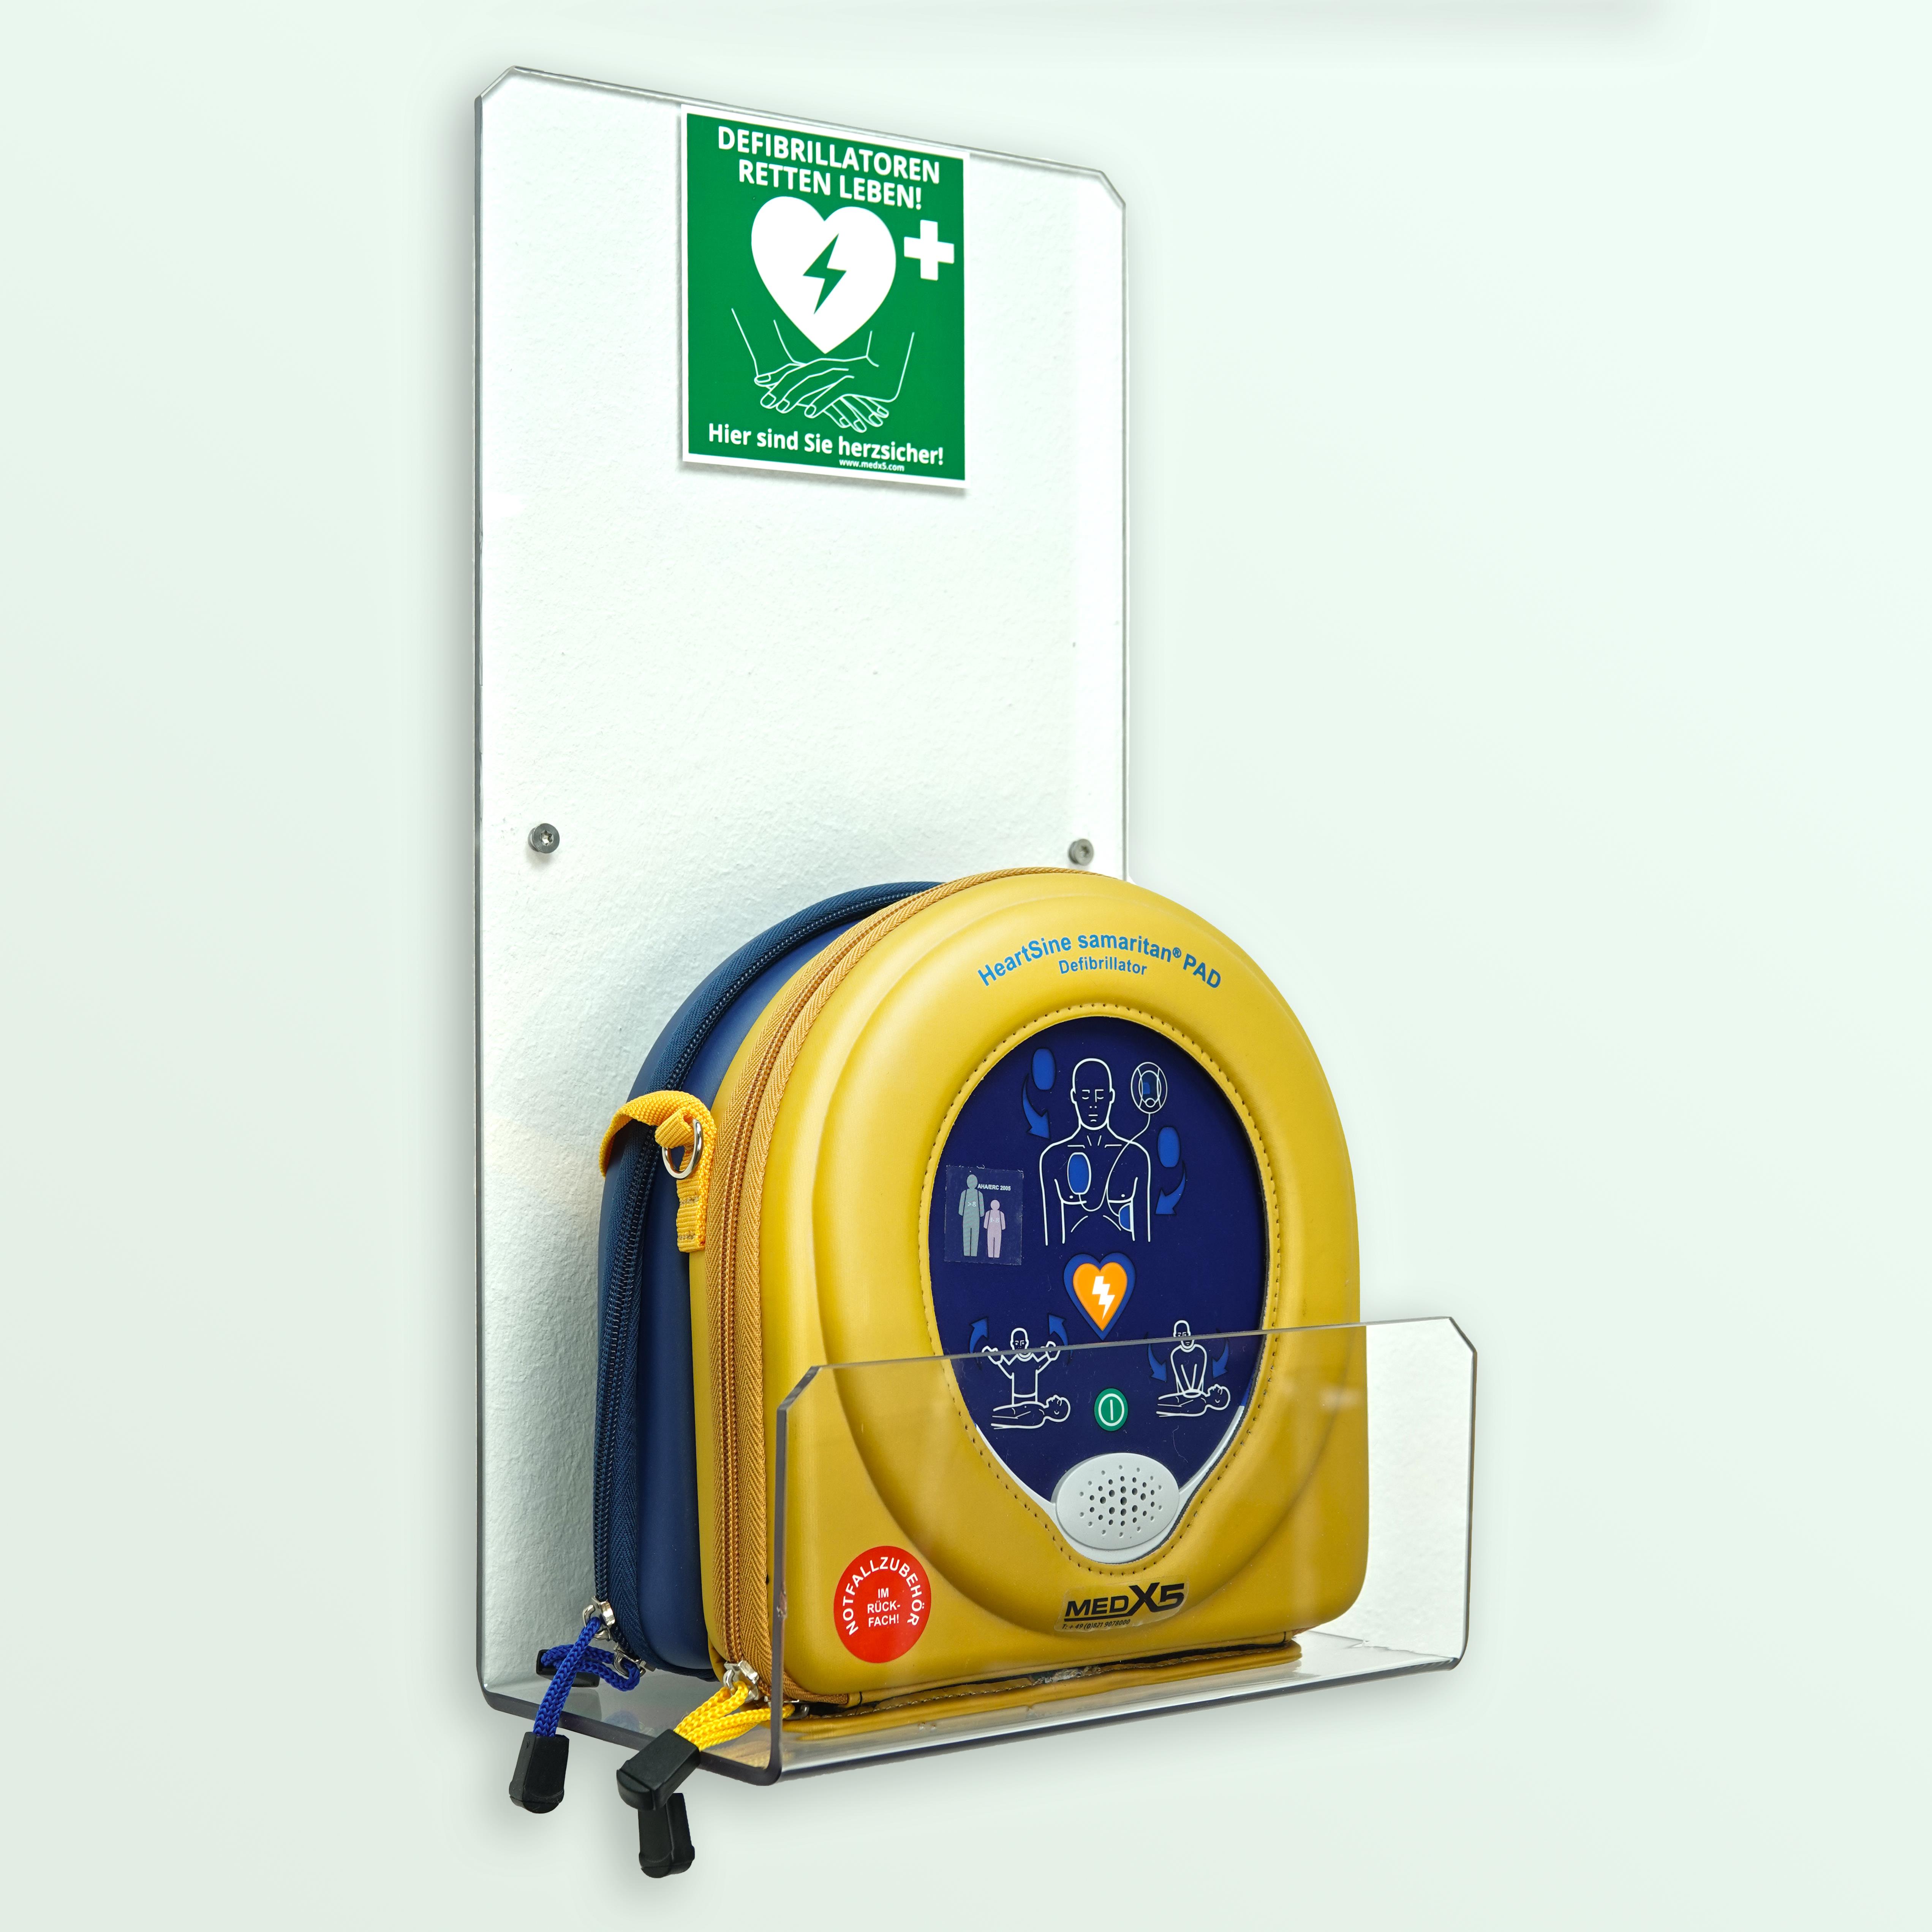 Defibrillator AED Wandhalter für innen, Plexiglas, Universalgröße